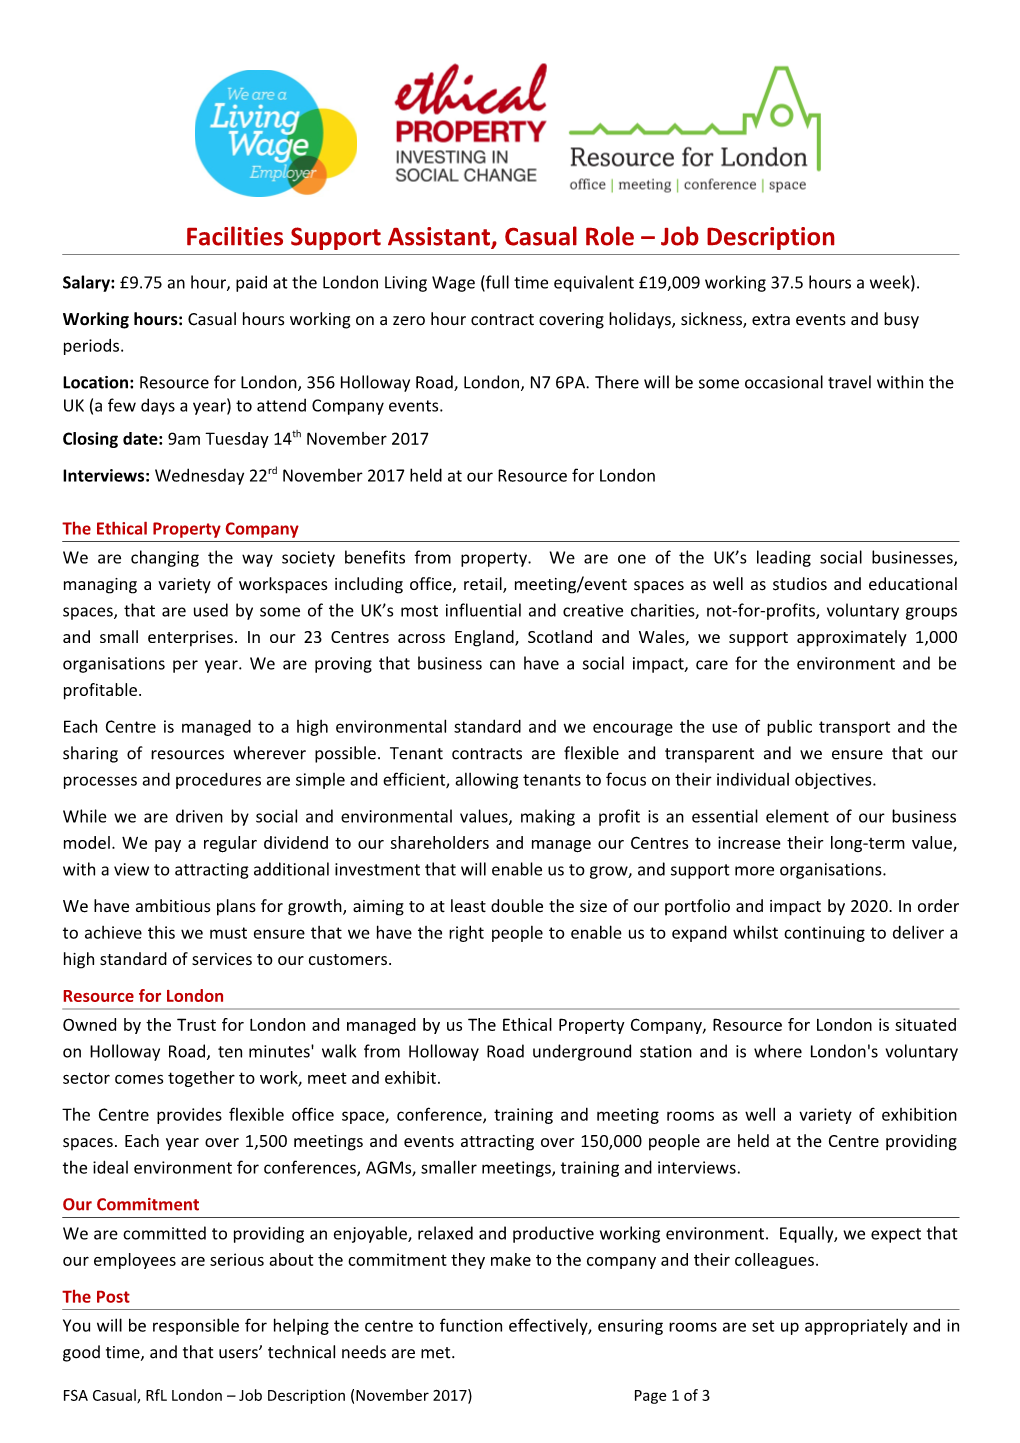 Facilities Support Assistant, Casual Role Job Description